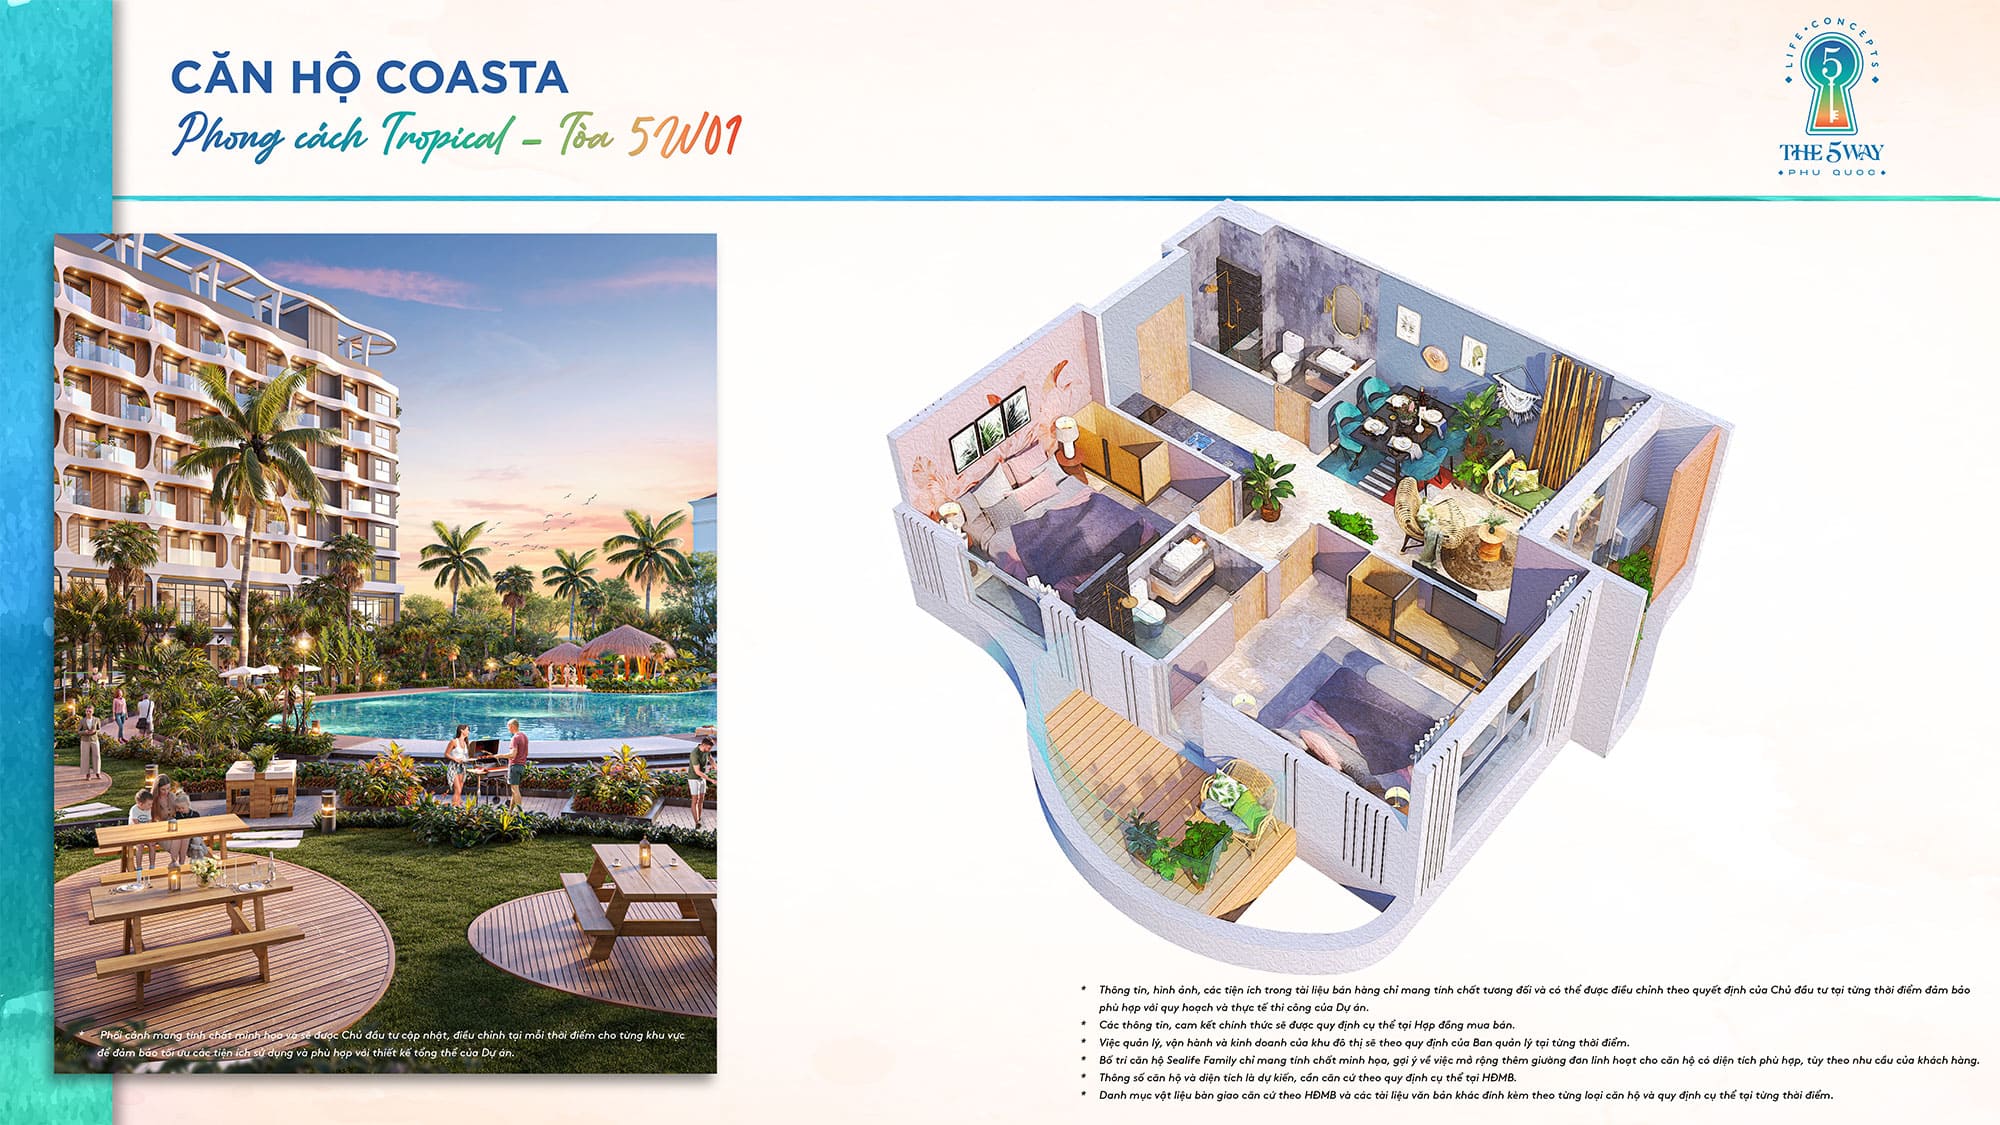 Layout bóc mái căn hộ Coasta, Tòa 5W01 phong cách Tropical thuộc dự án The 5Way - Life Concepts.